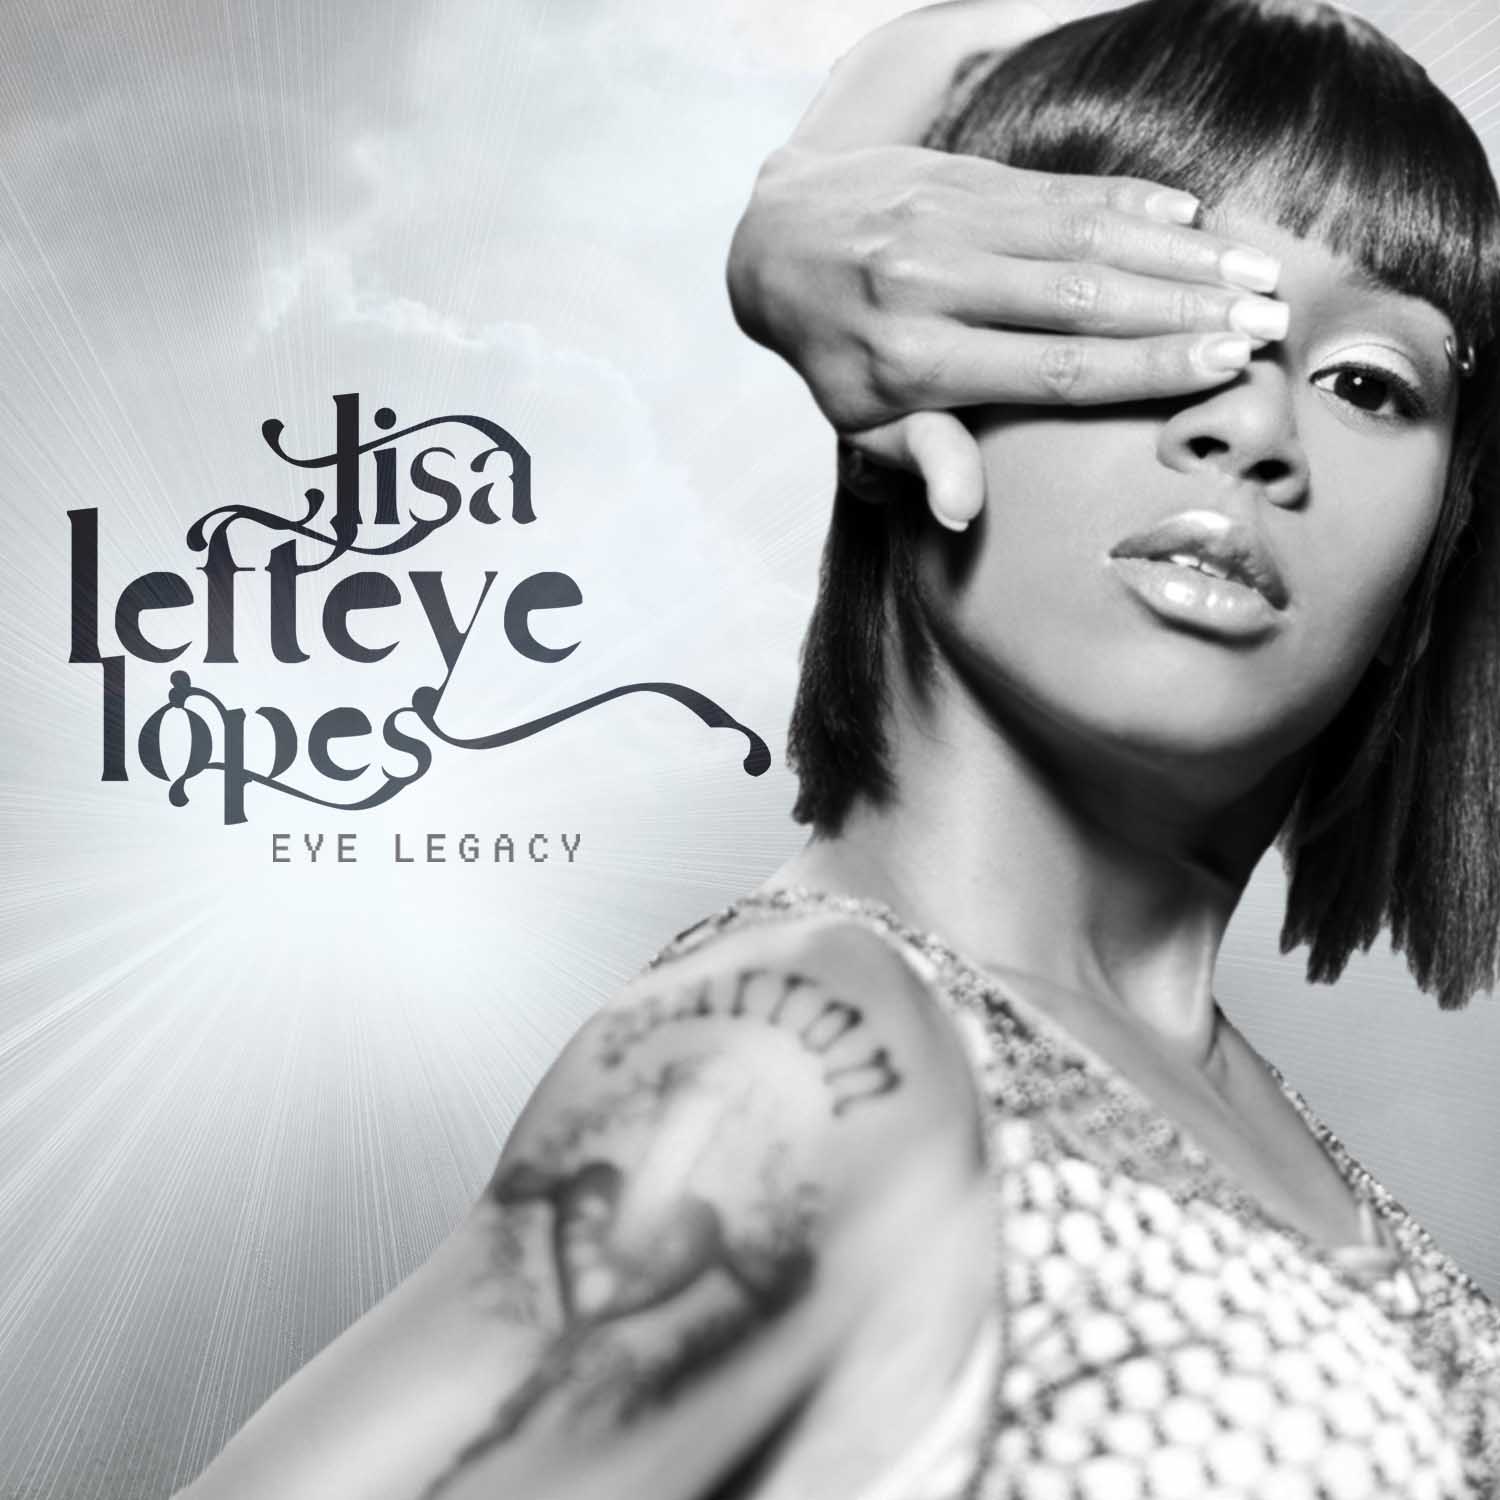 Lisa “left Eye” Lopes Straight From The A Sfta Atlanta